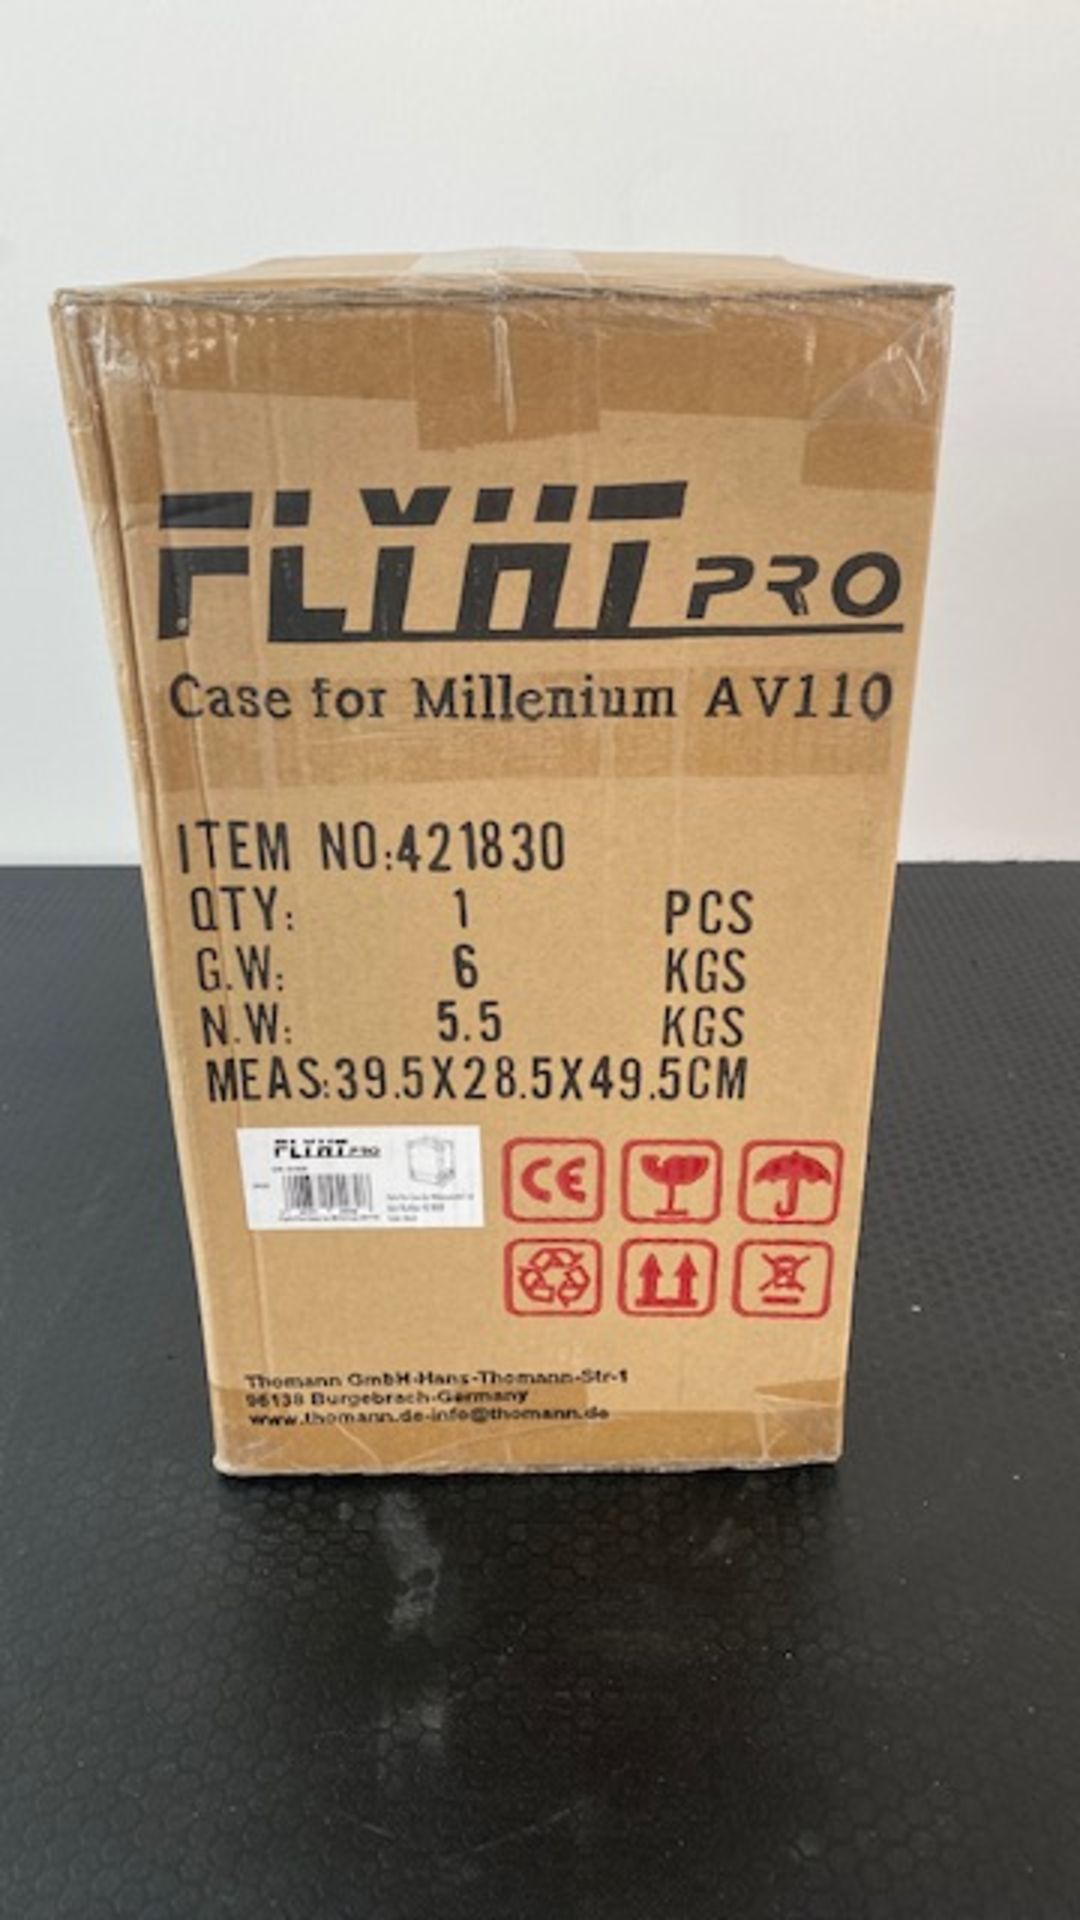 1 x FLYHT PRO Flight Case For Millenium AV110 - New / Unopened - Ref: 932 - CL581 - Location: - Image 2 of 6